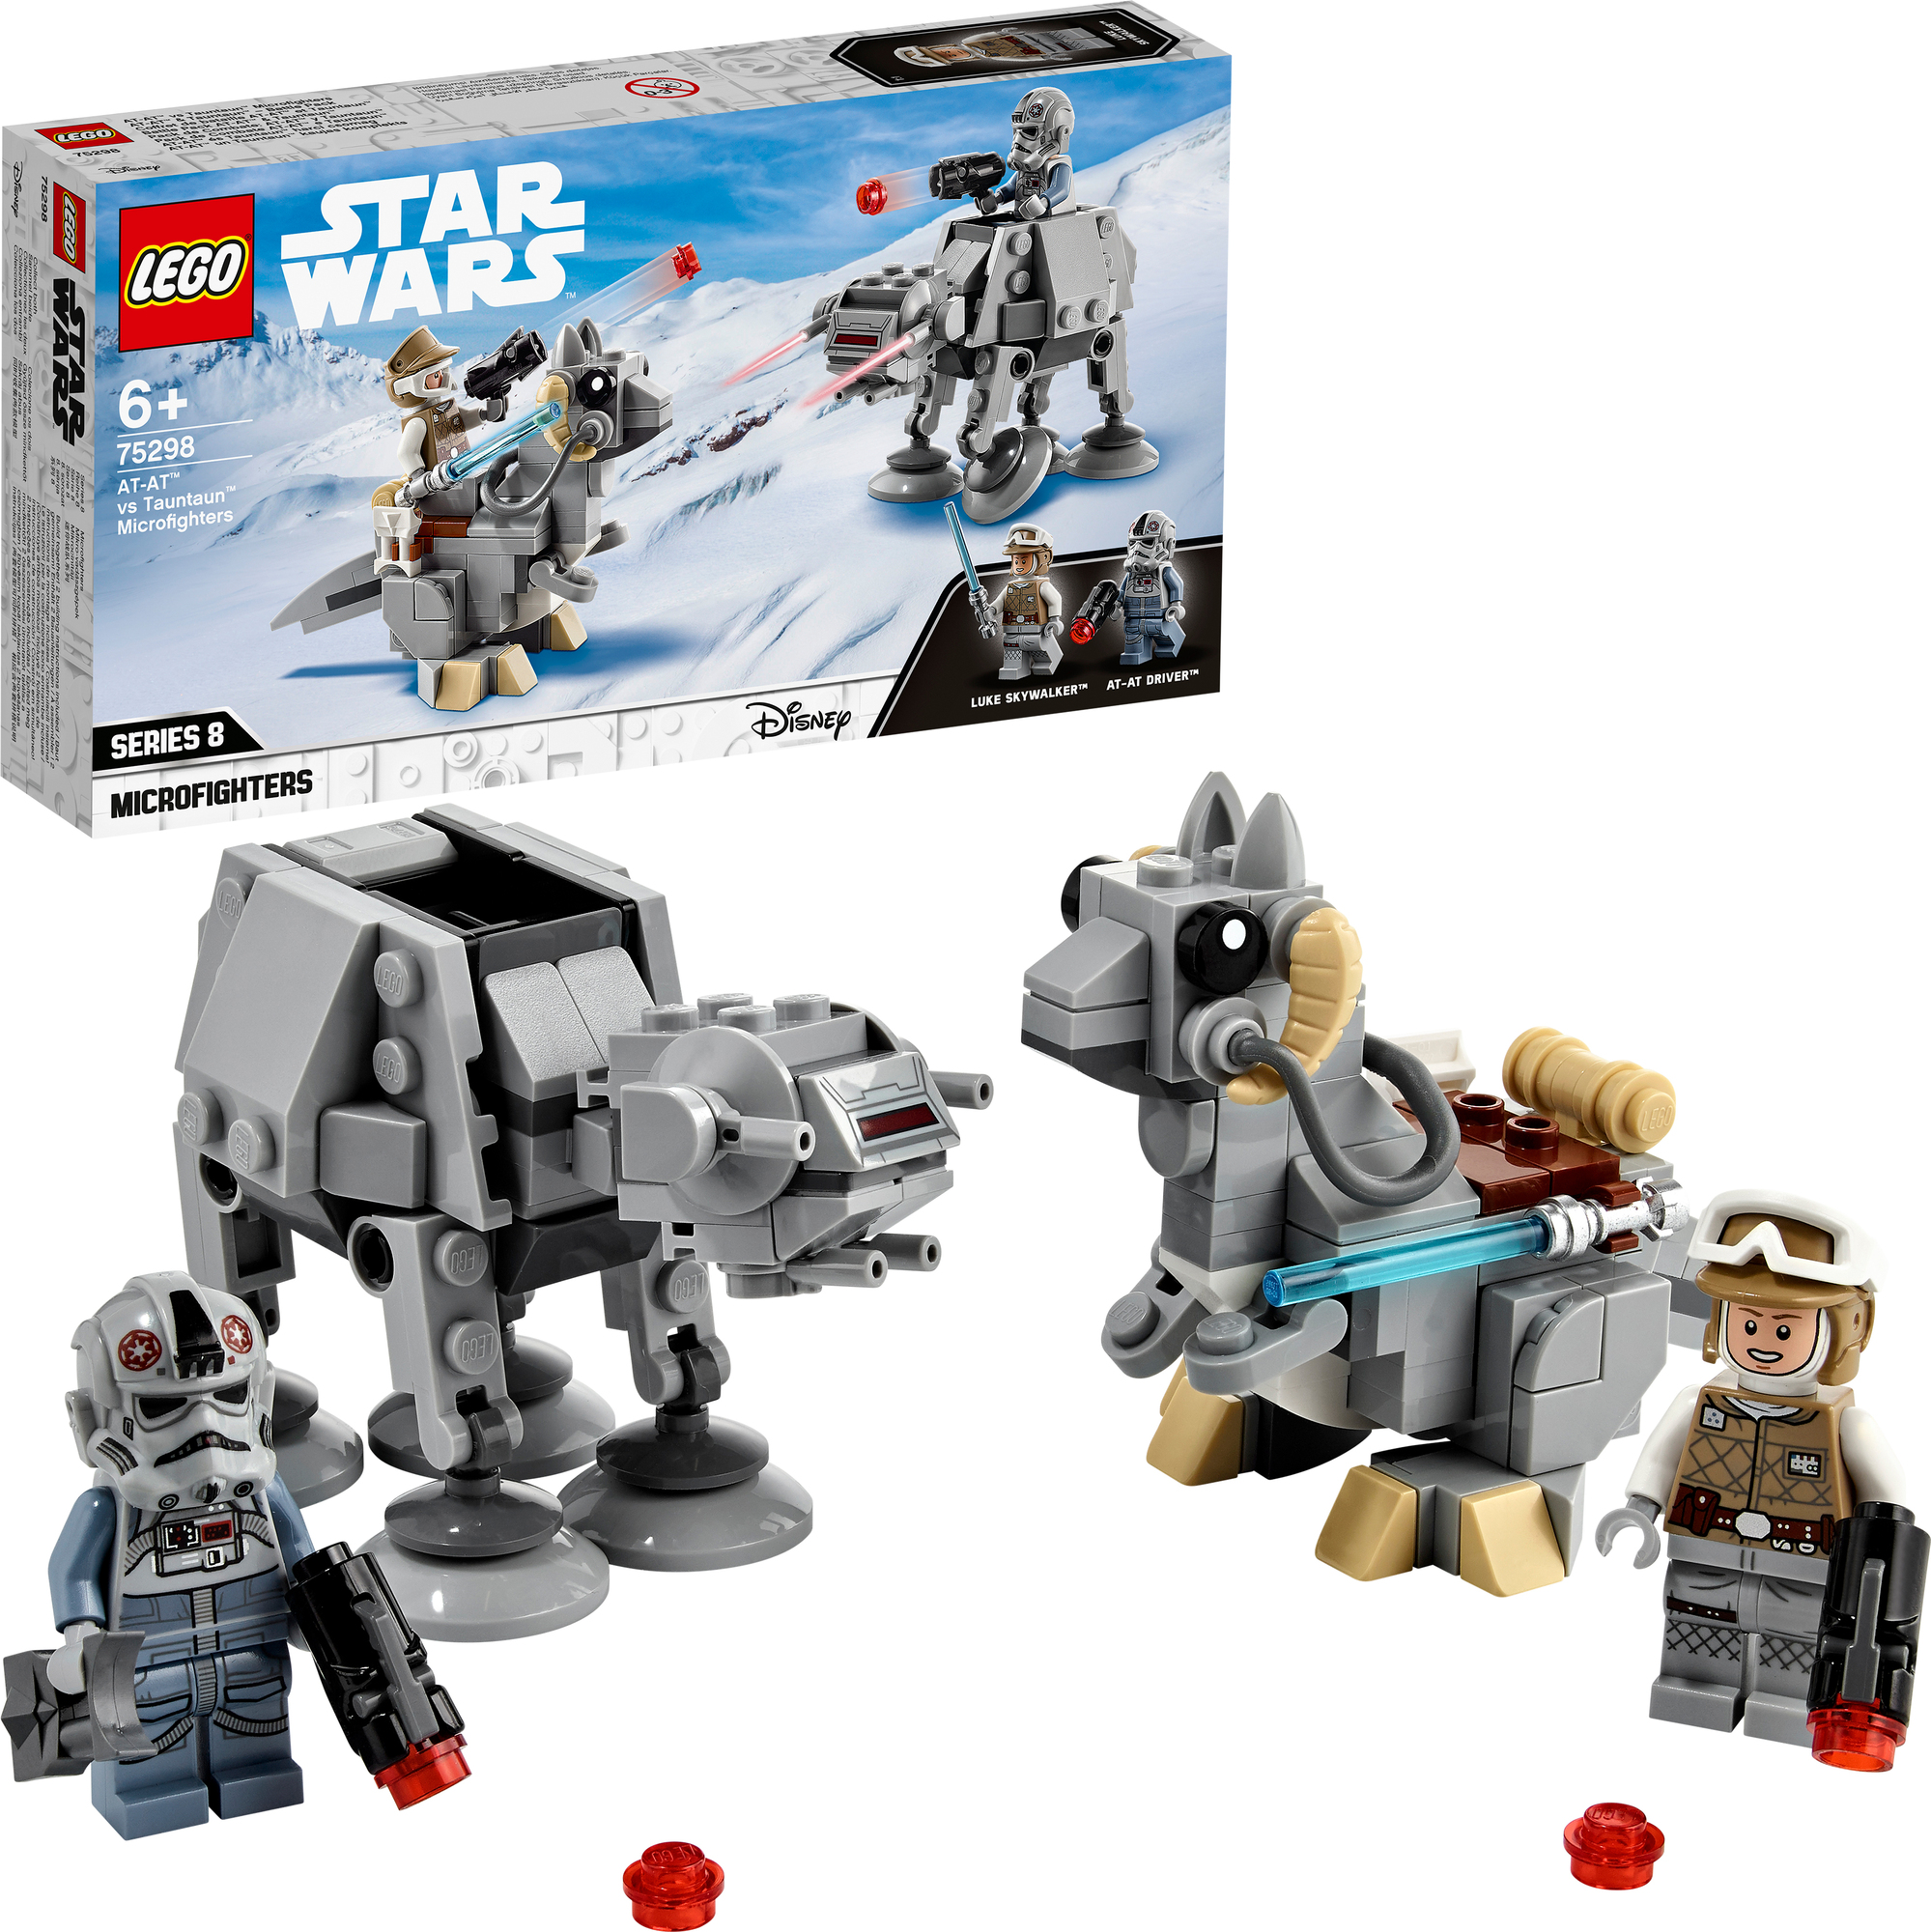 Giocattolo con Minifigure di Han Solo per Bambini di 6 Anni 75295 LEGO Star Wars Microfighter Millennium Falcon